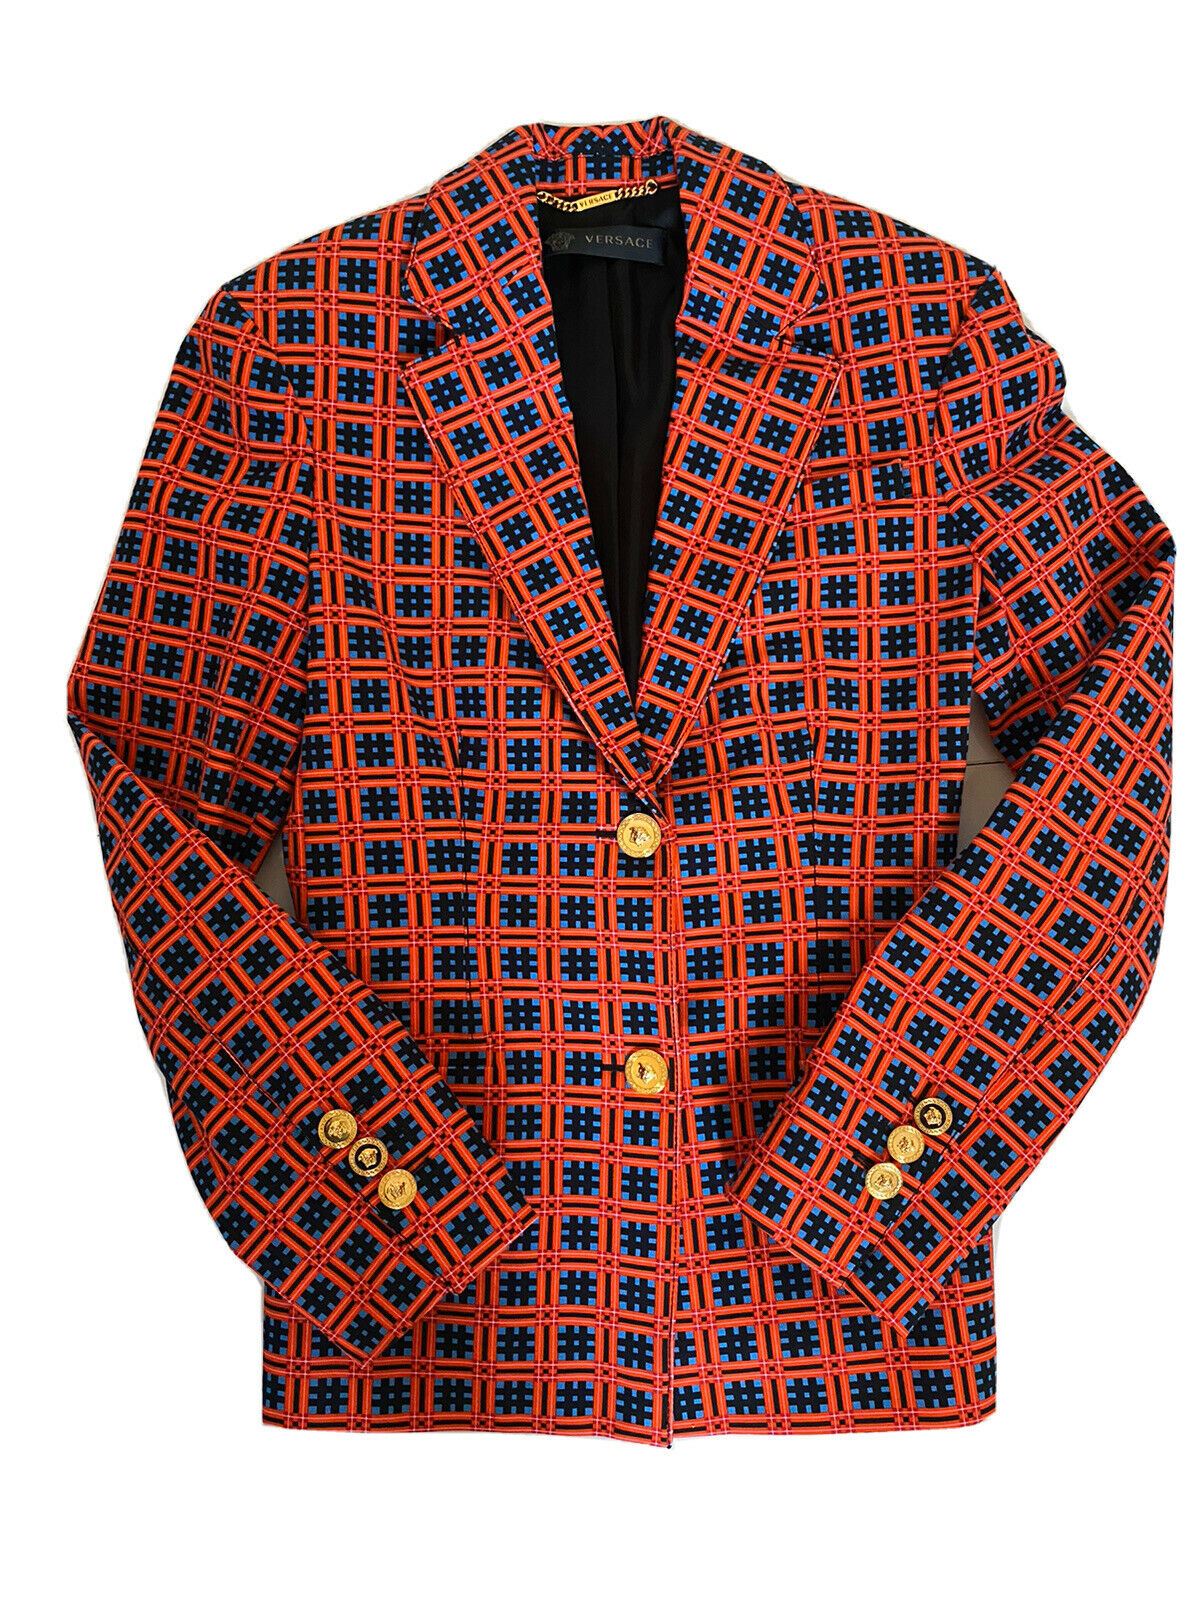 NWT $2895 Versace Женская красная куртка 38 (S) Италия